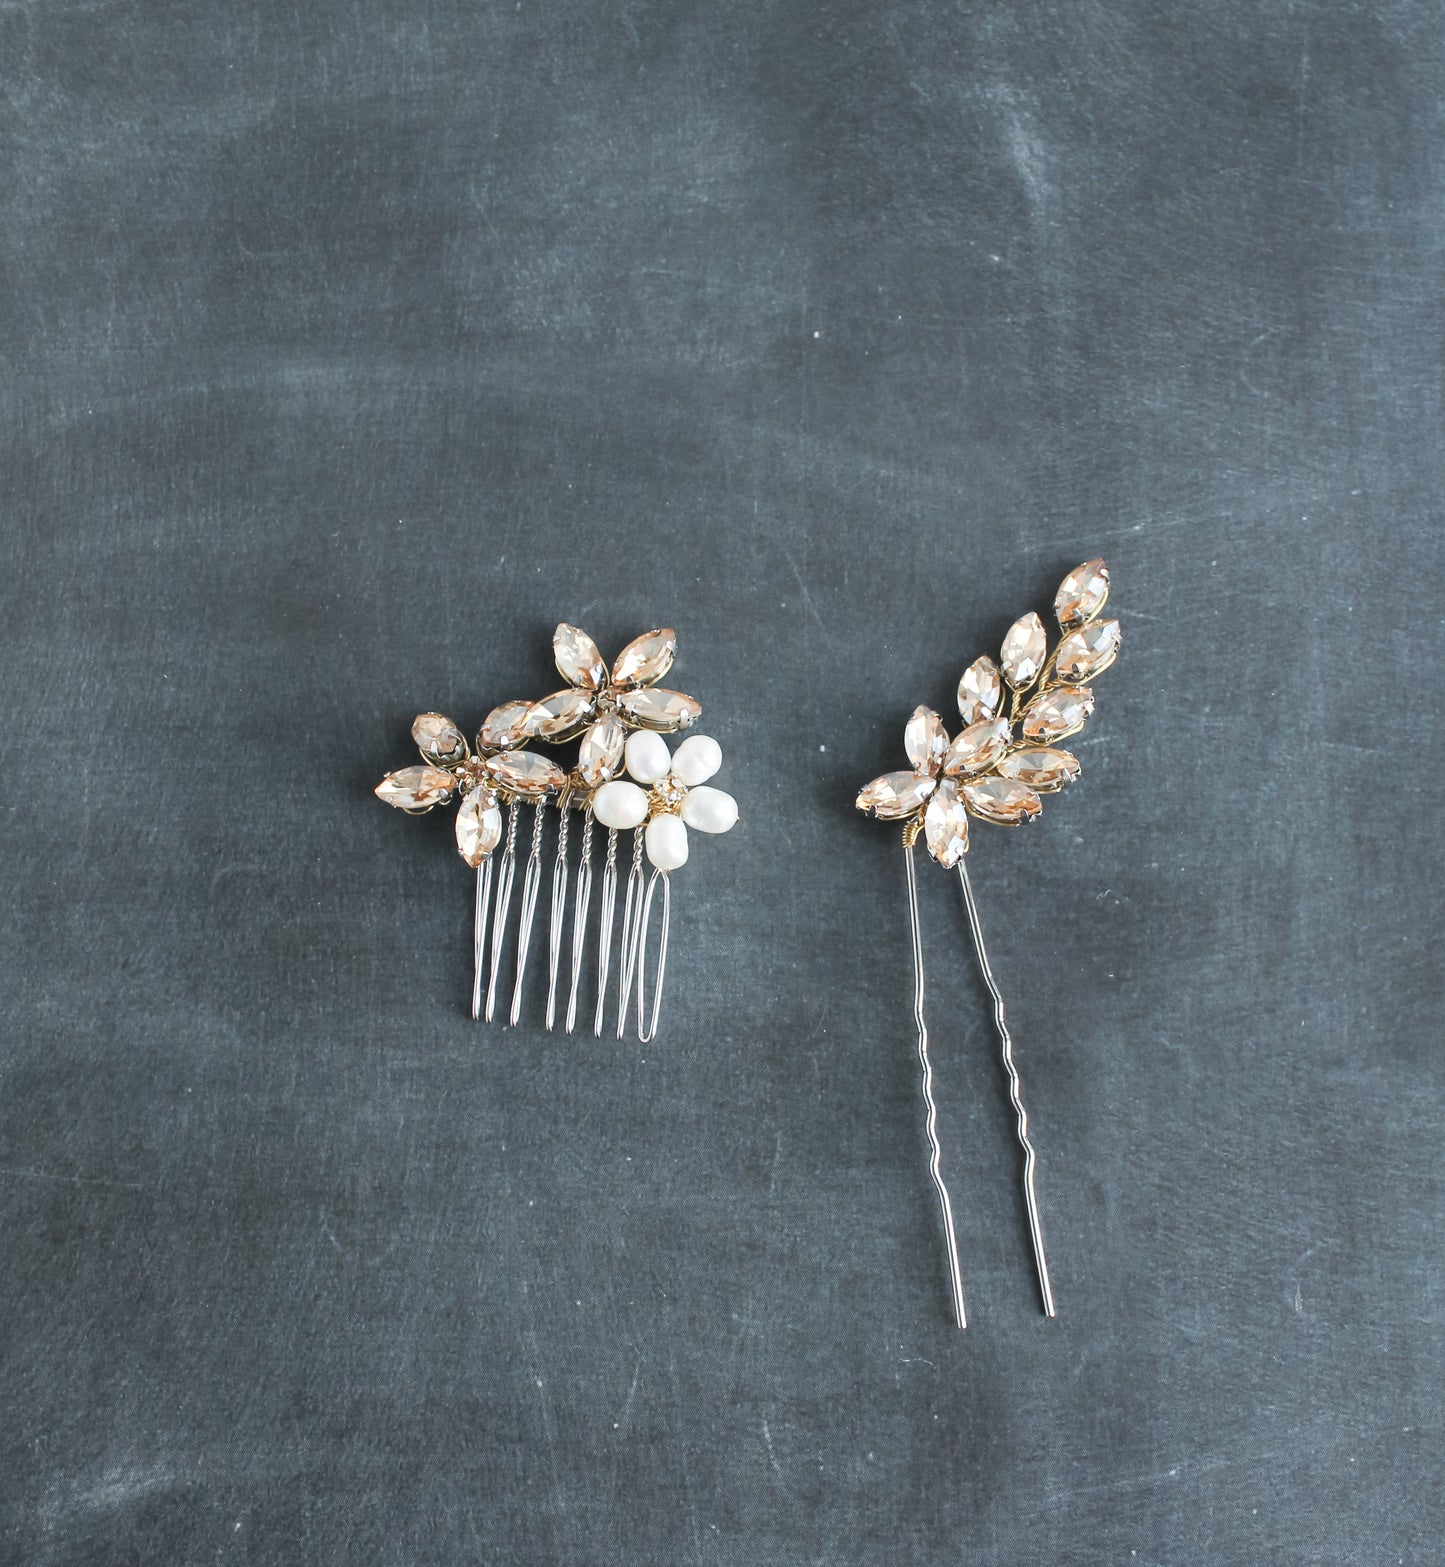 Daisy bridal crystal comb & hairpin set